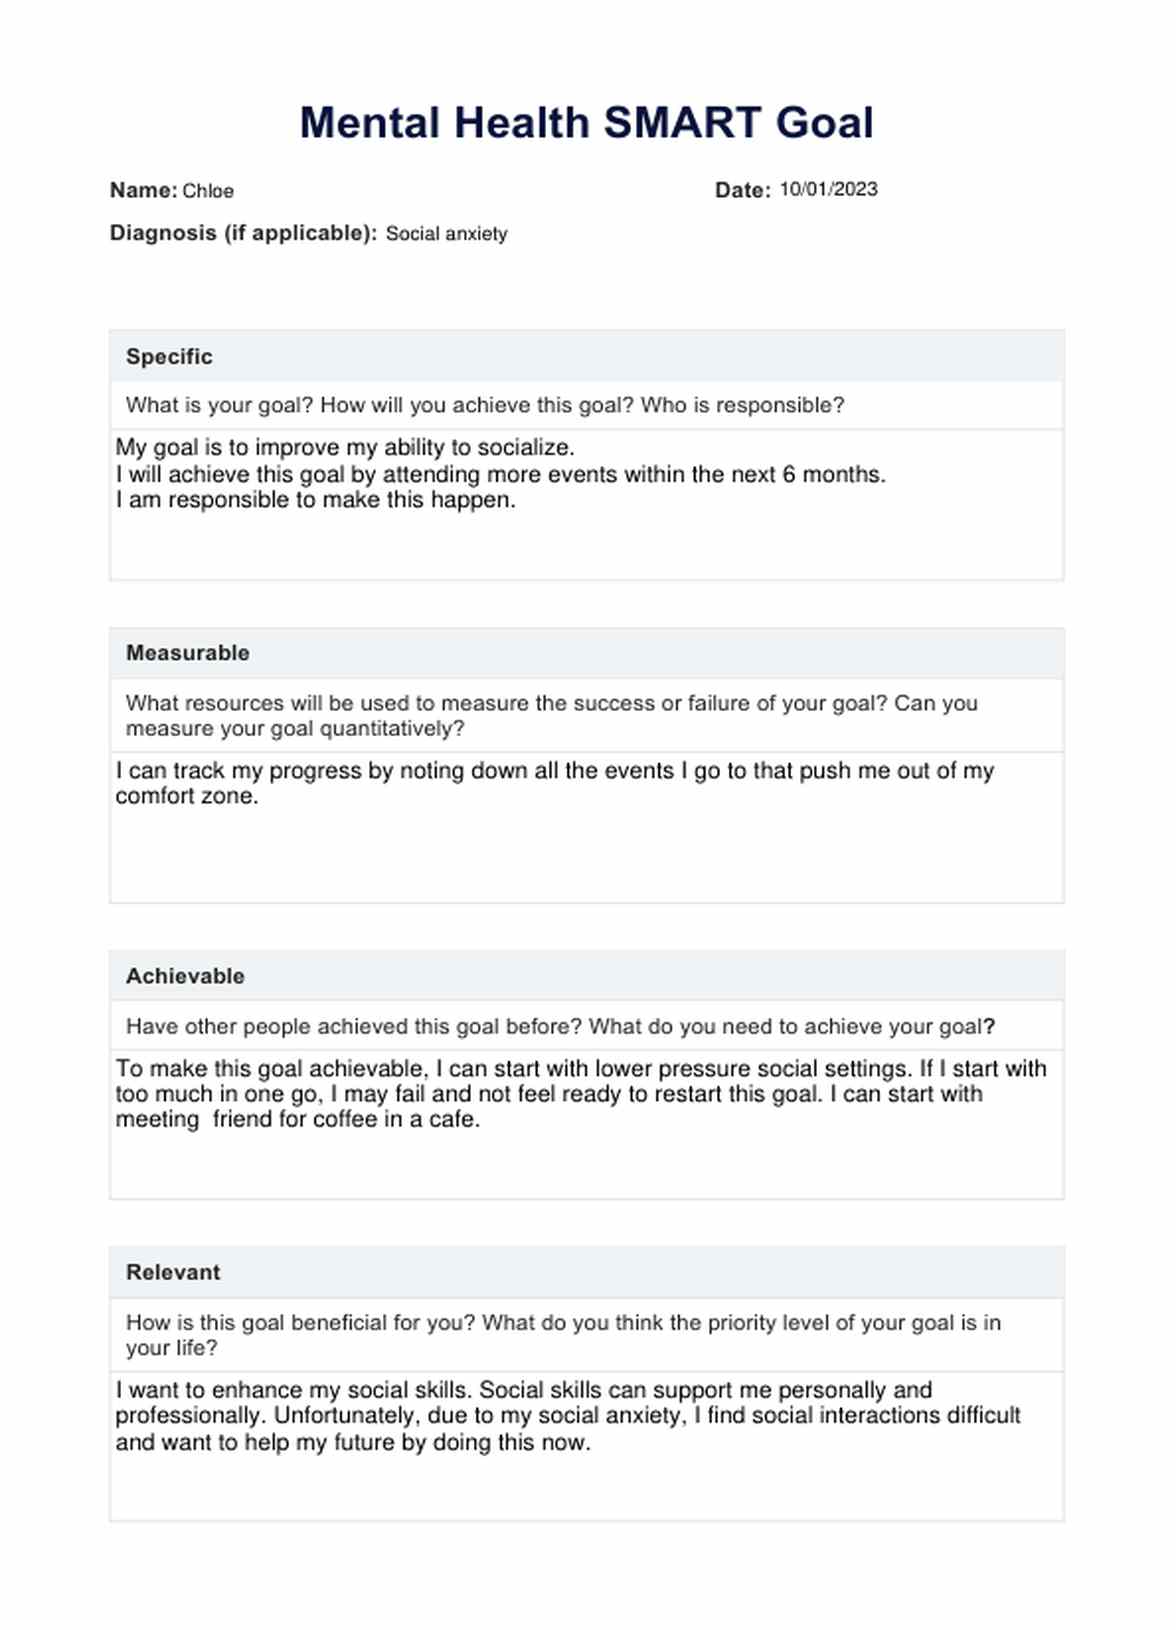 SMART Goals Mental Health PDF PDF Example